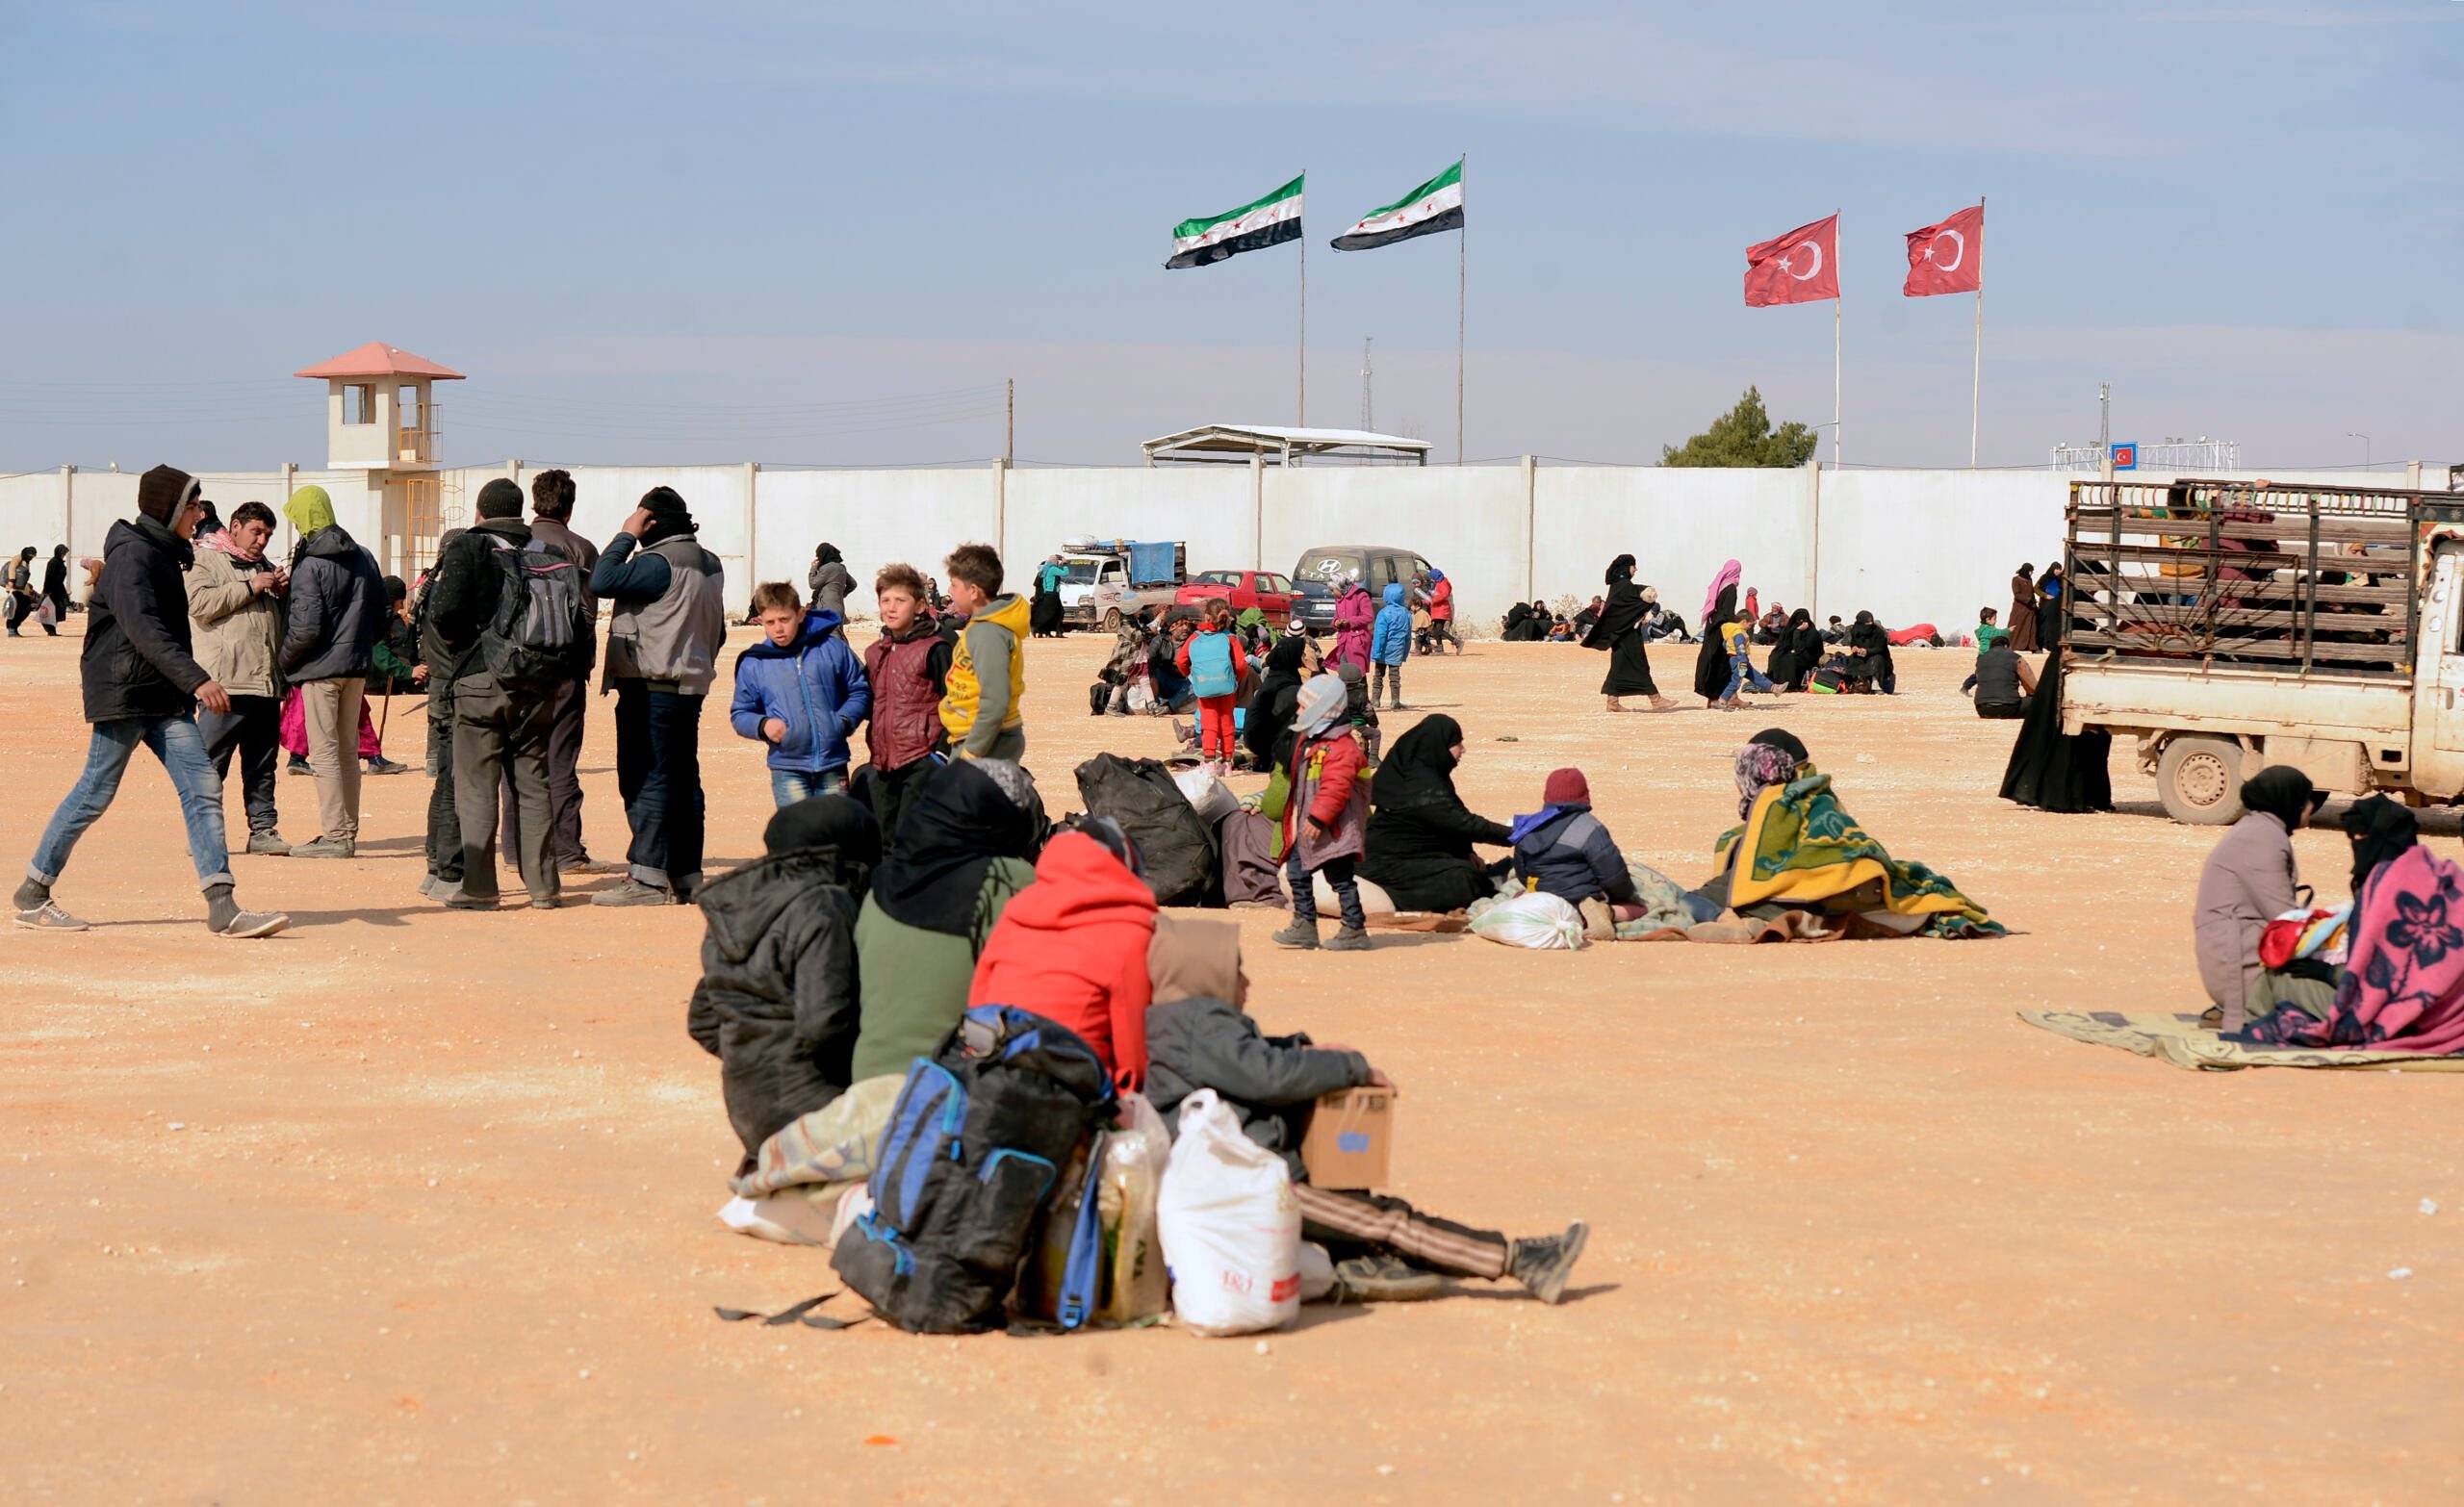 Grafika do artykułu "Karawana światła". Syryjscy uchodźcy ruszą z Turcji w kierunku Europy? [OPRYSZEK]